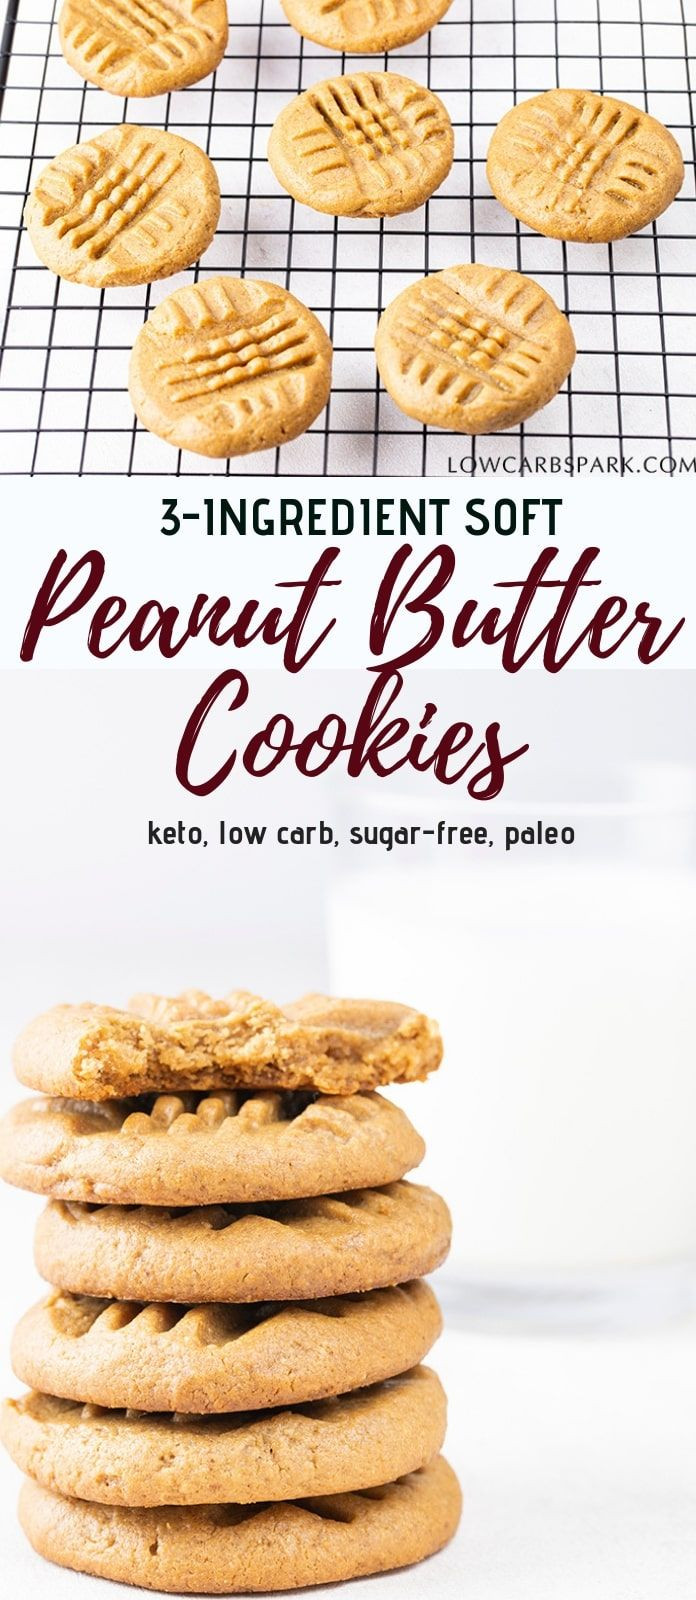 Easy Keto Cookies 3 Ingredients
 Easy 3 Ingre nt Keto Peanut Butter Cookies Low Carb